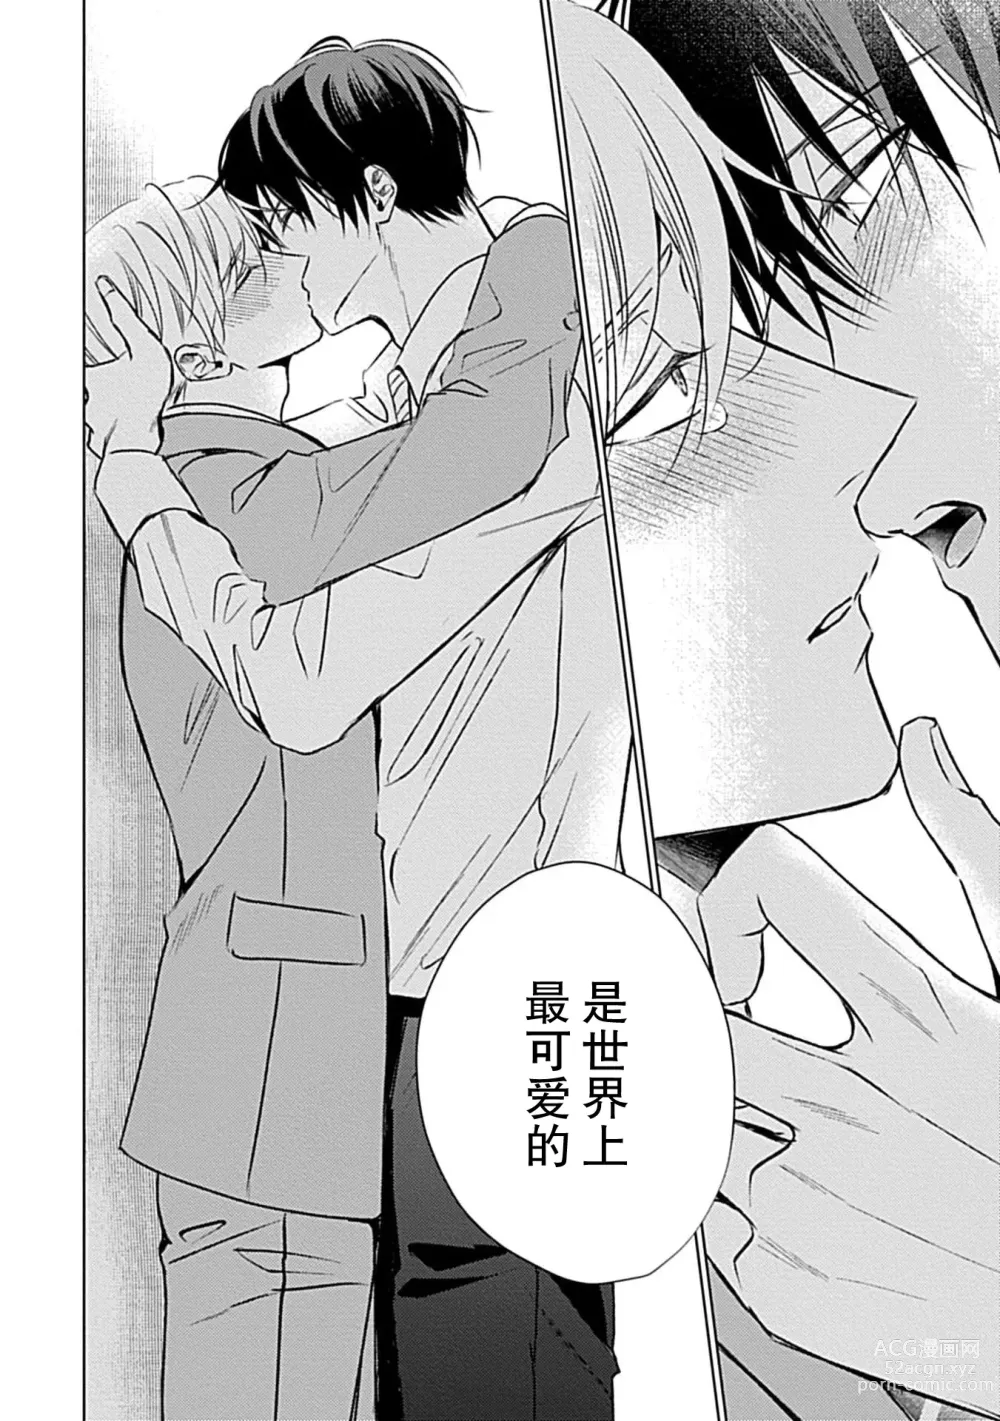 Page 136 of manga 爱哭鬼恋人的爱情法则 1-5